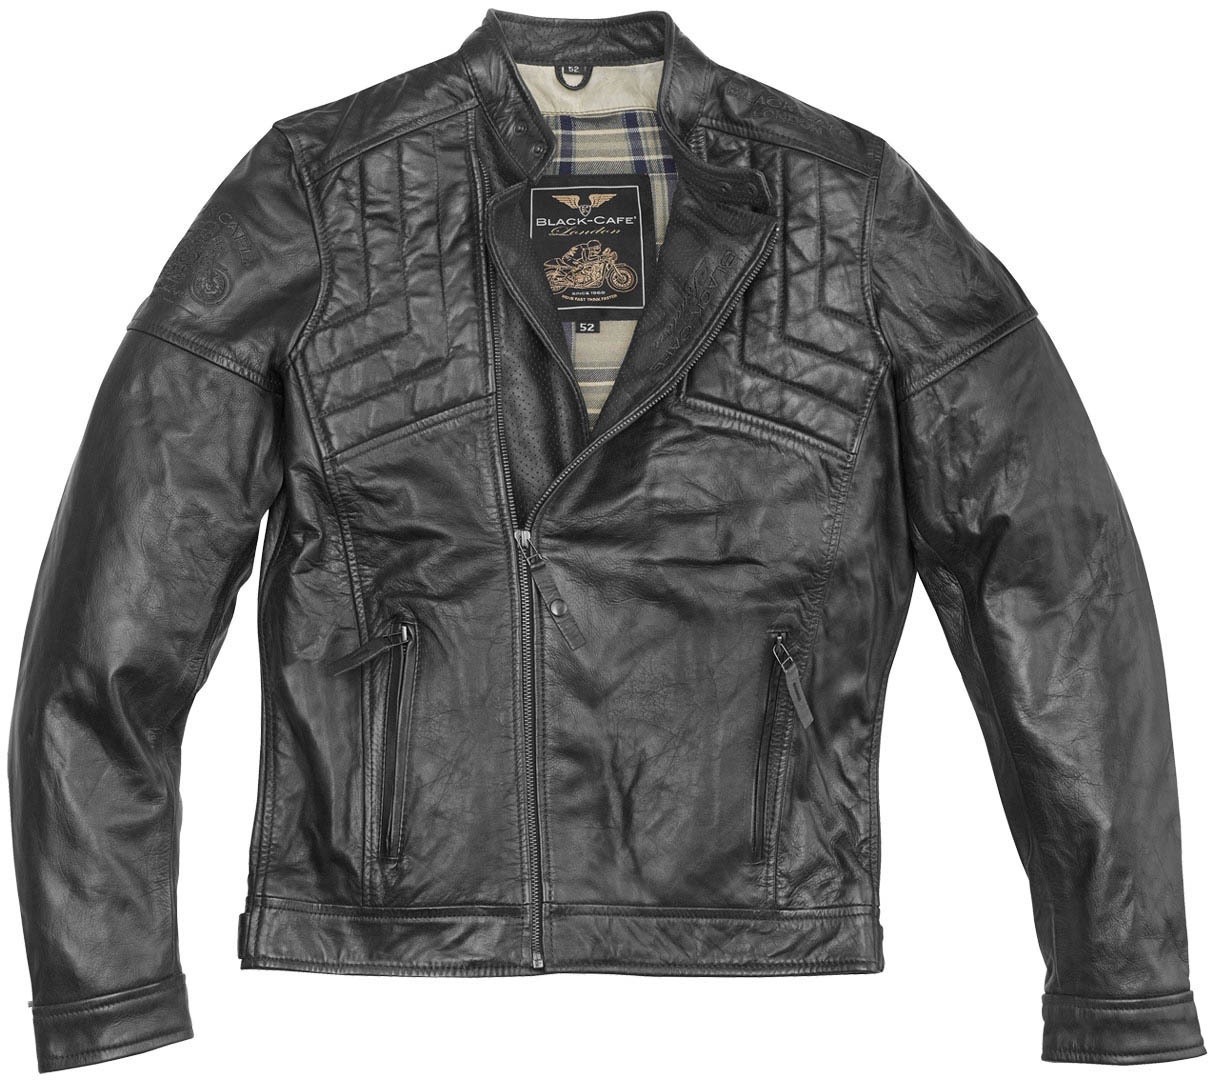 Black-Cafe London Philadelphia Motorfiets lederen jas, zwart, 58